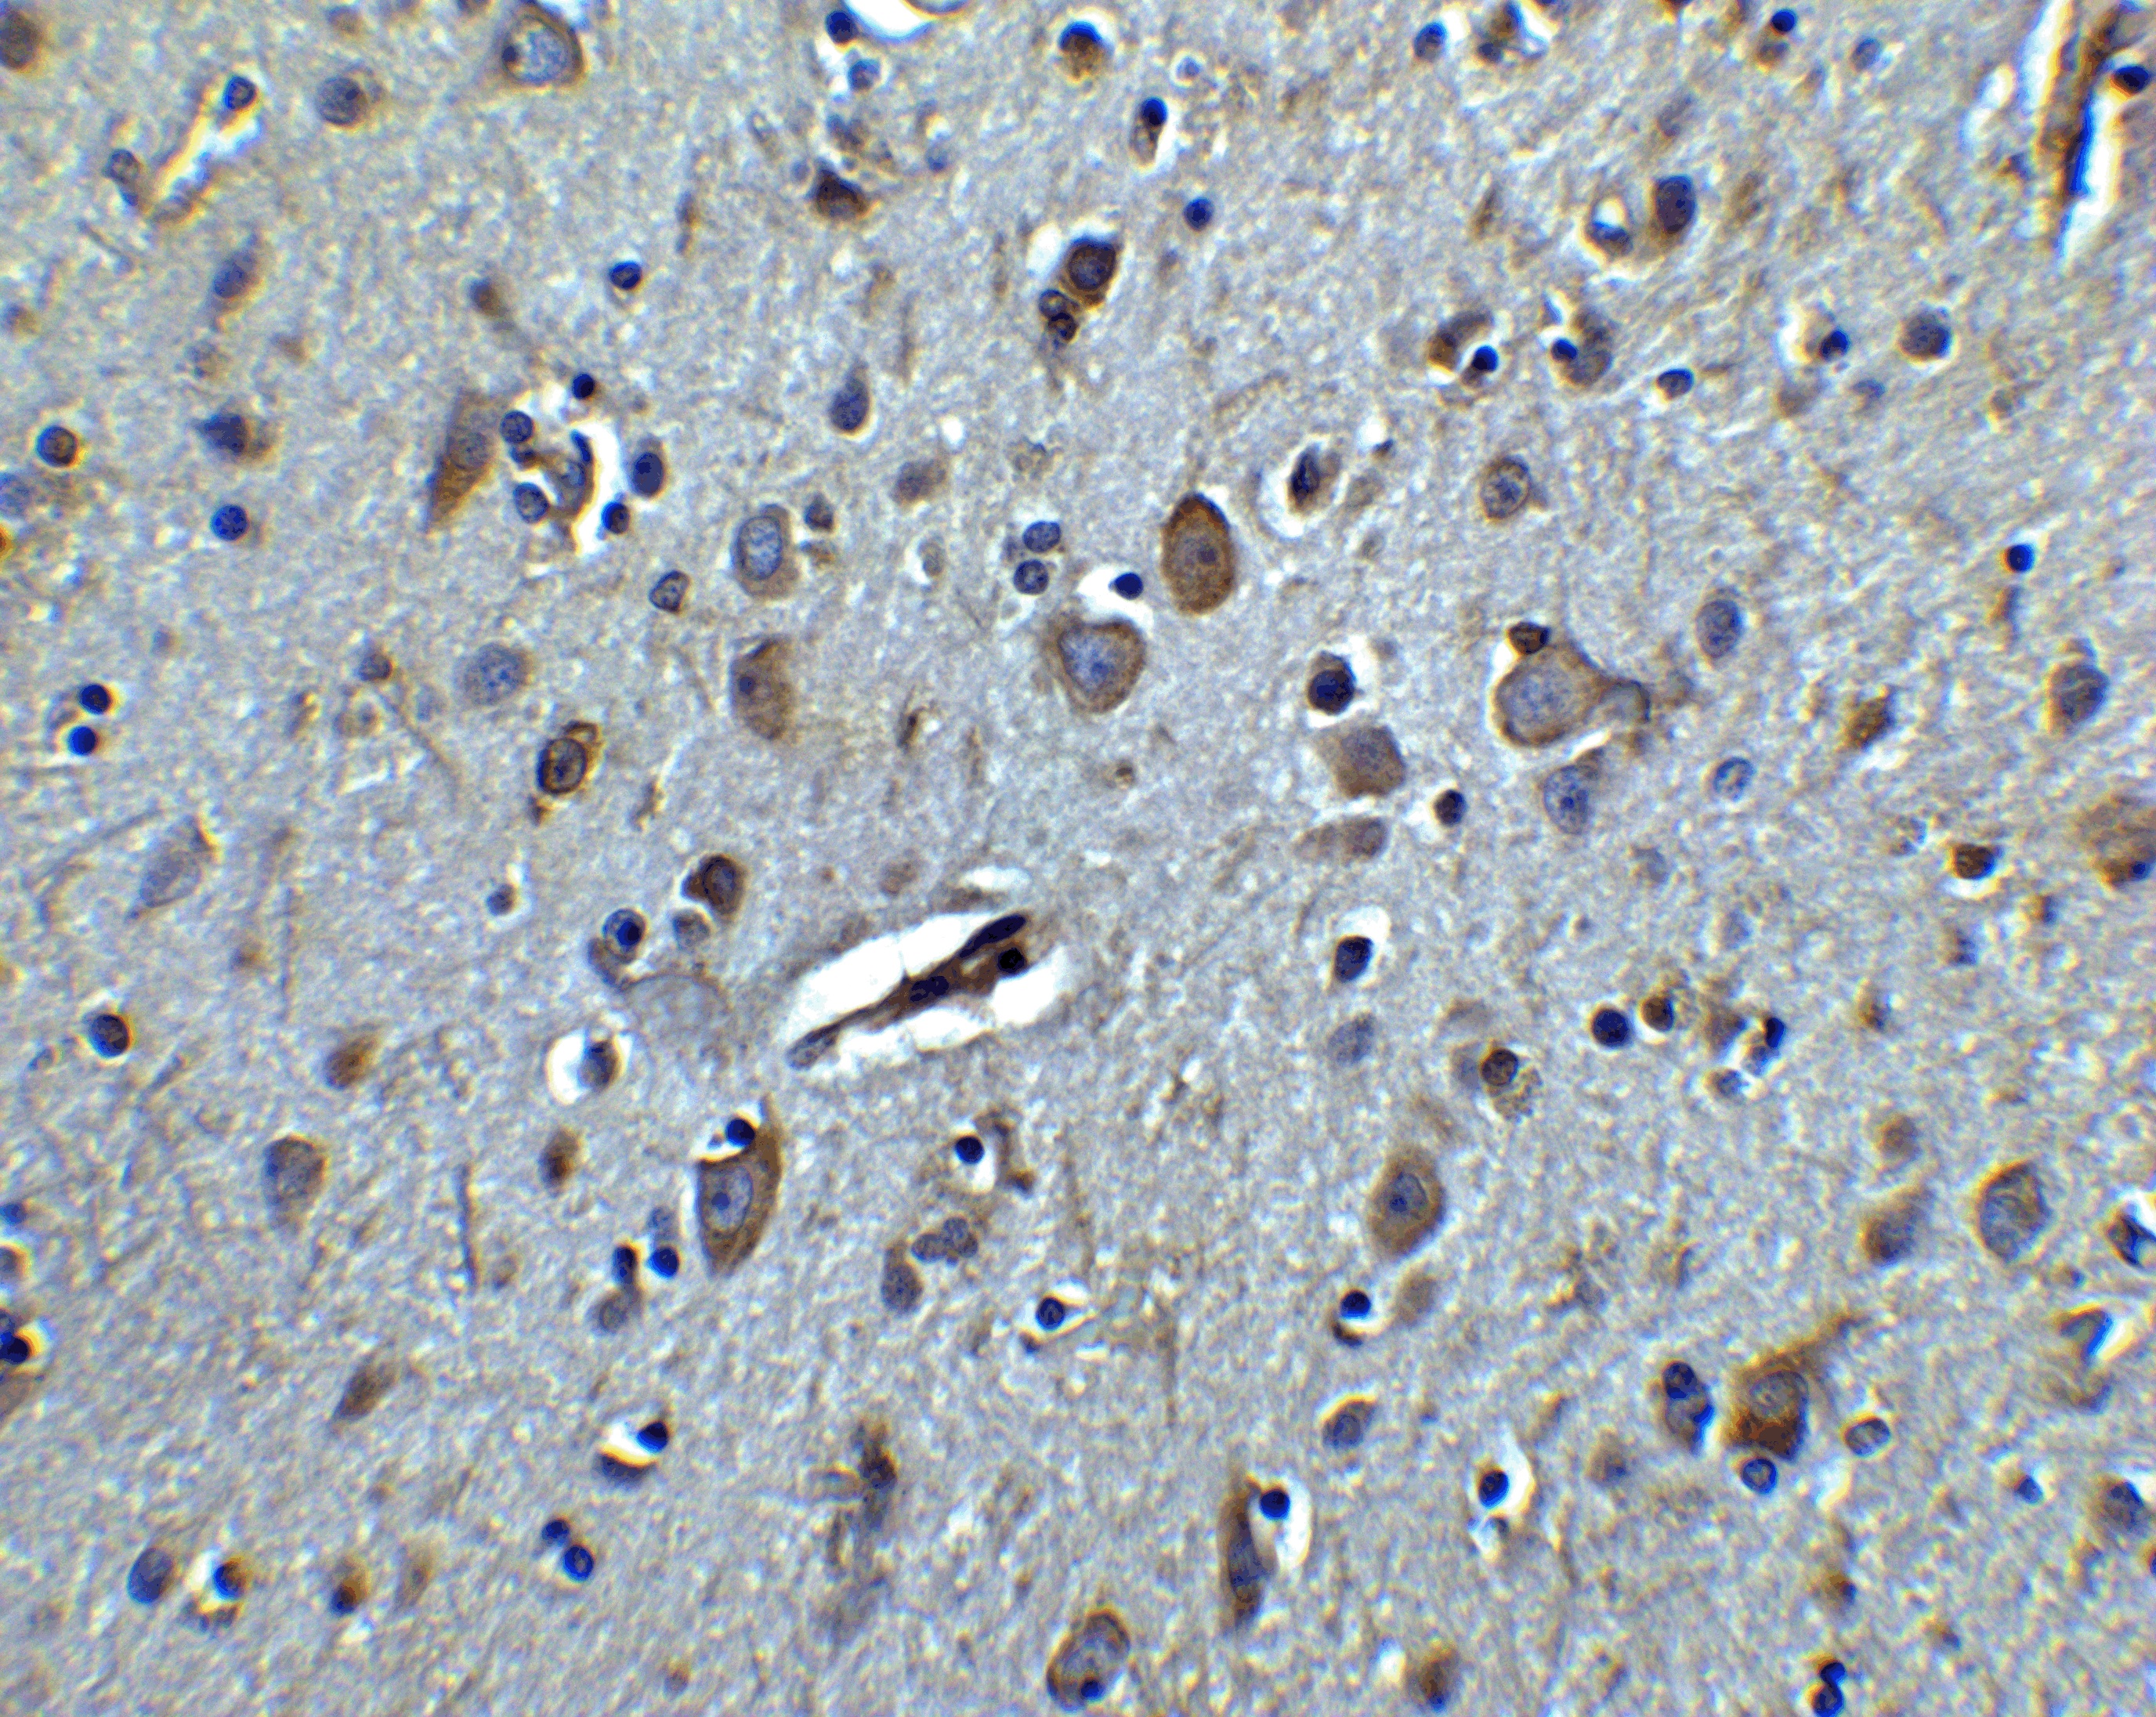 TET3 Antibody - C-terminal (OAPB01637) in human brain tissue using Immunohistochemistry